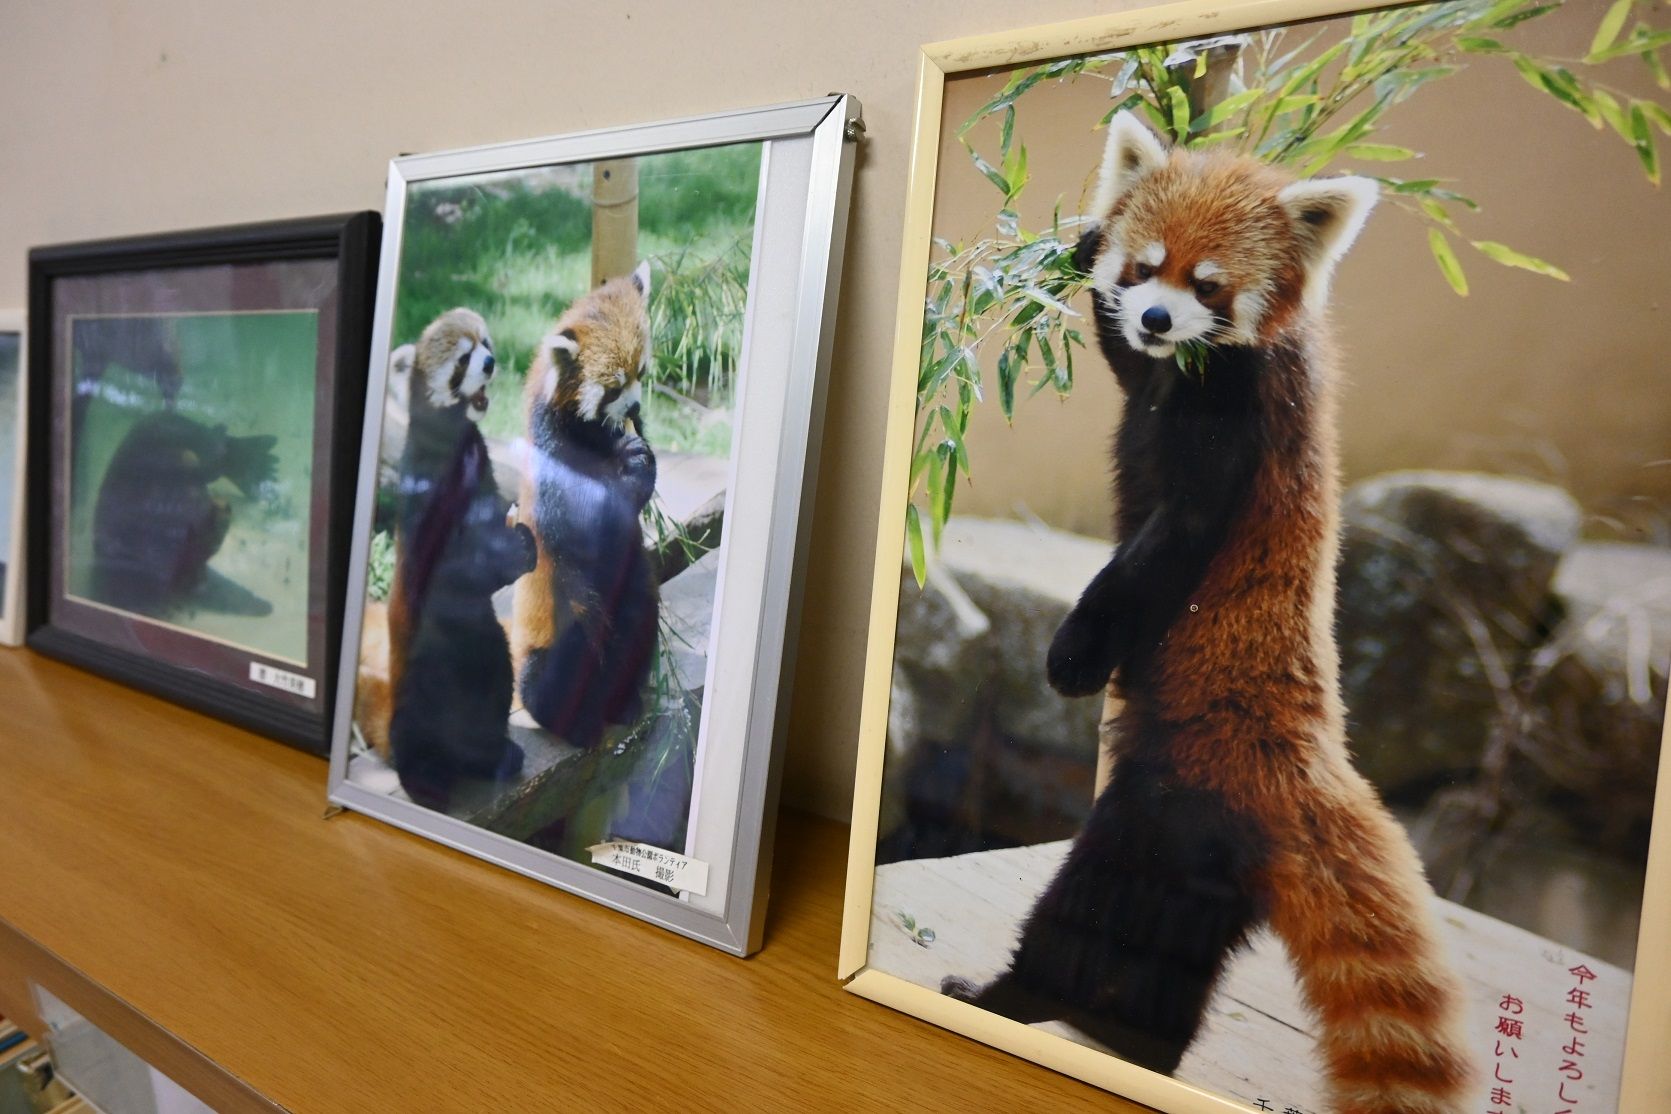 千葉市動物公園の図書室には、風太の立ち姿がブームになった頃の写真が置かれている